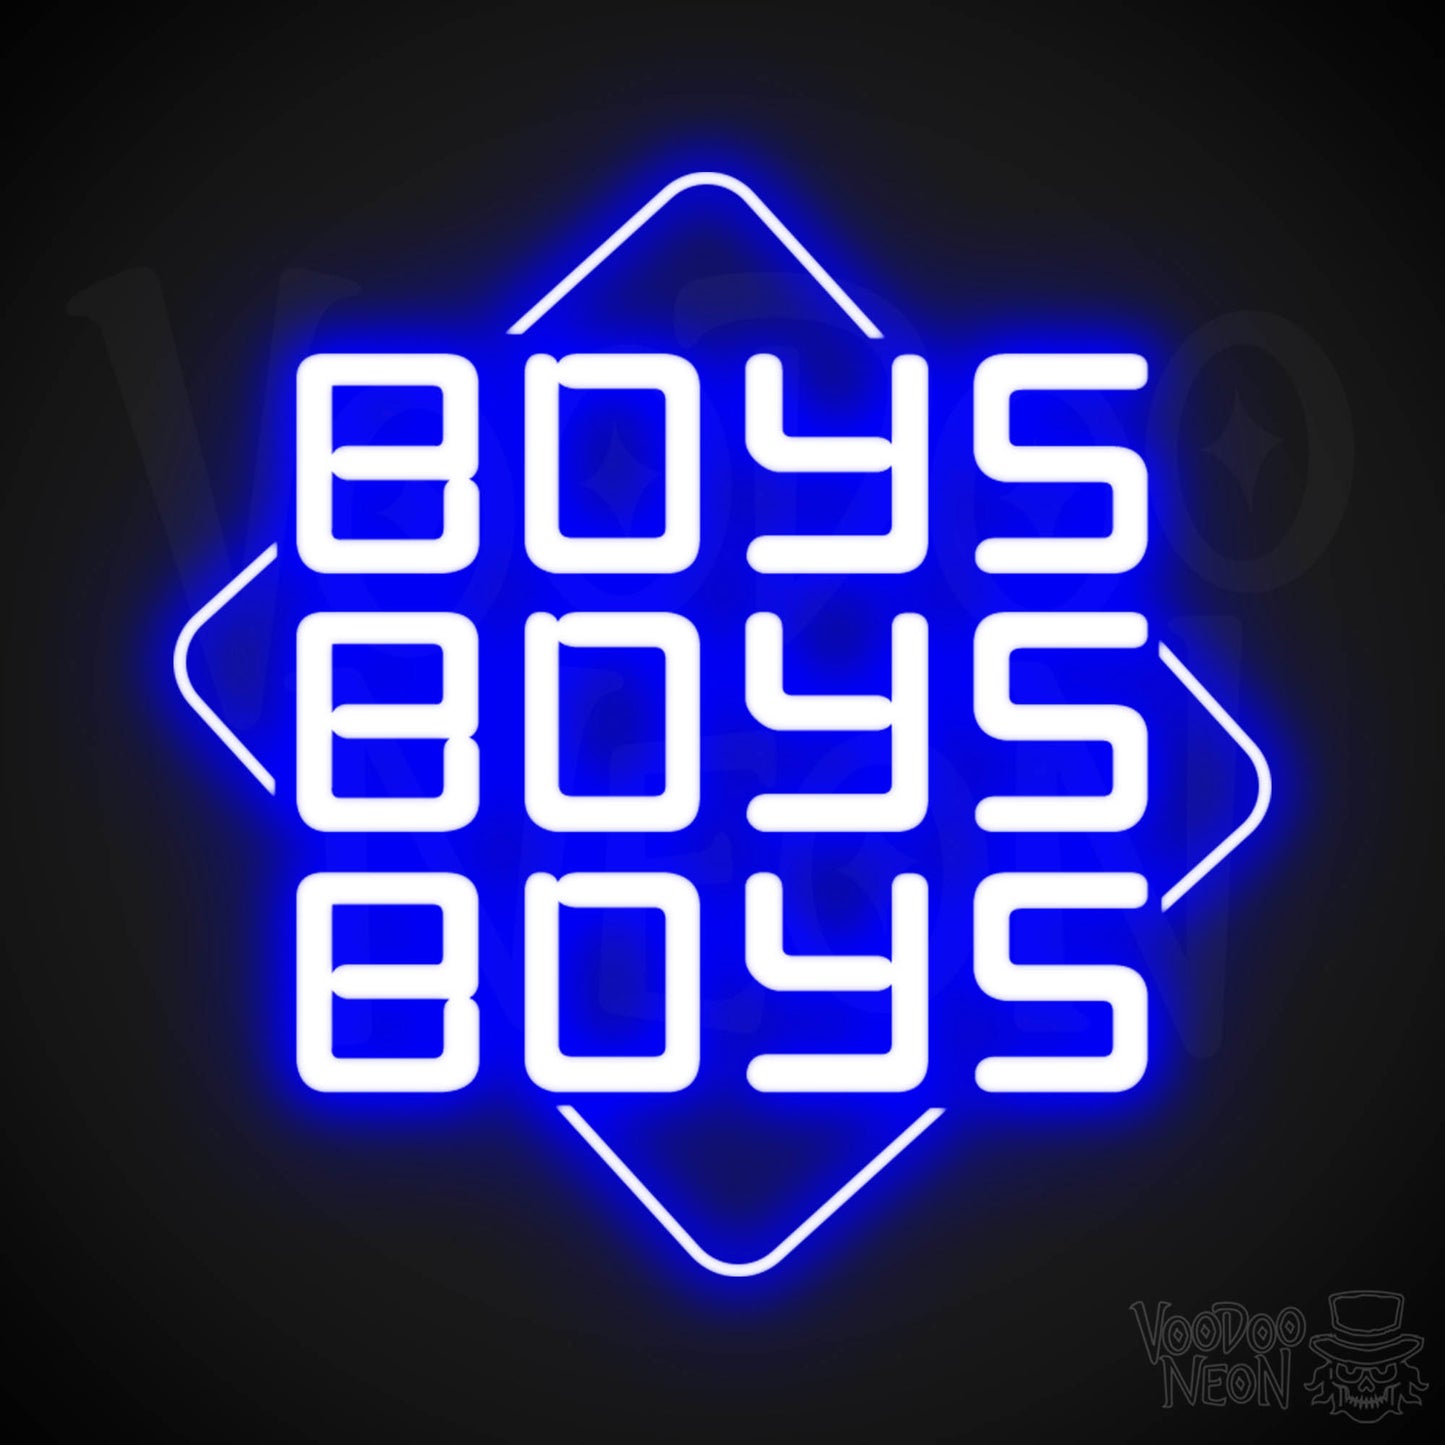 Boys Boys Boys Neon Sign - Neon Boys Boys Boys Sign - Neon Wall Art - Color Dark Blue